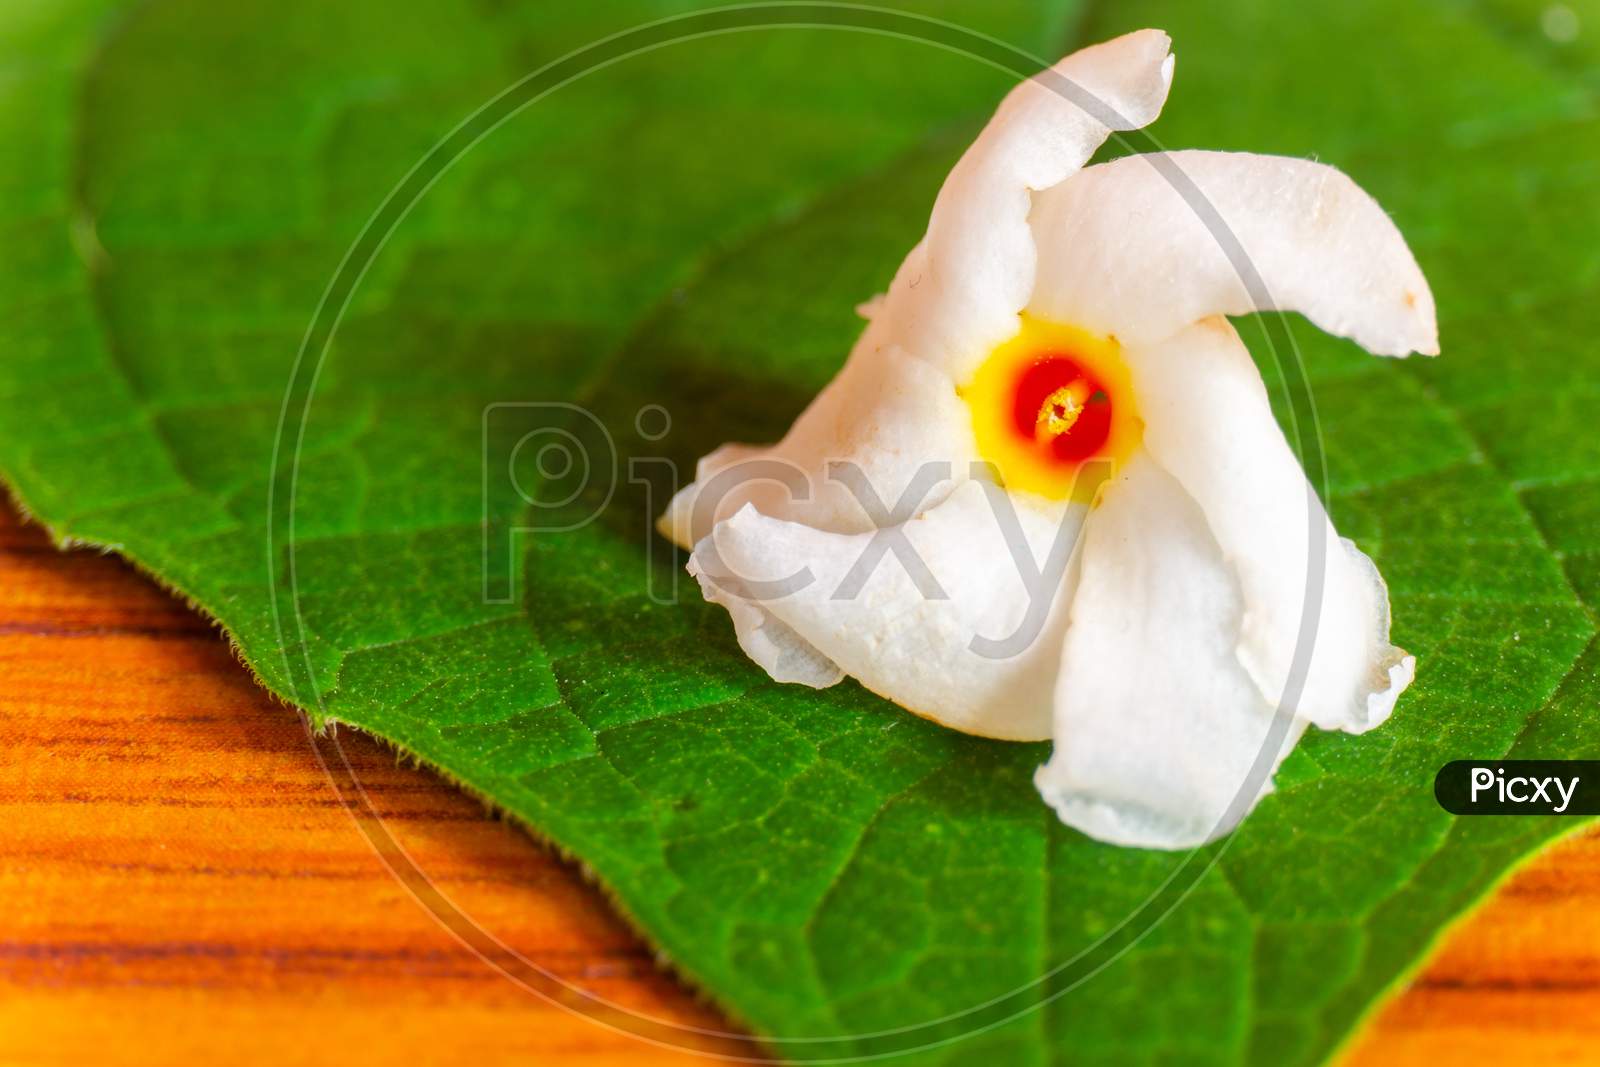 Parijatham Flower On A Leaf